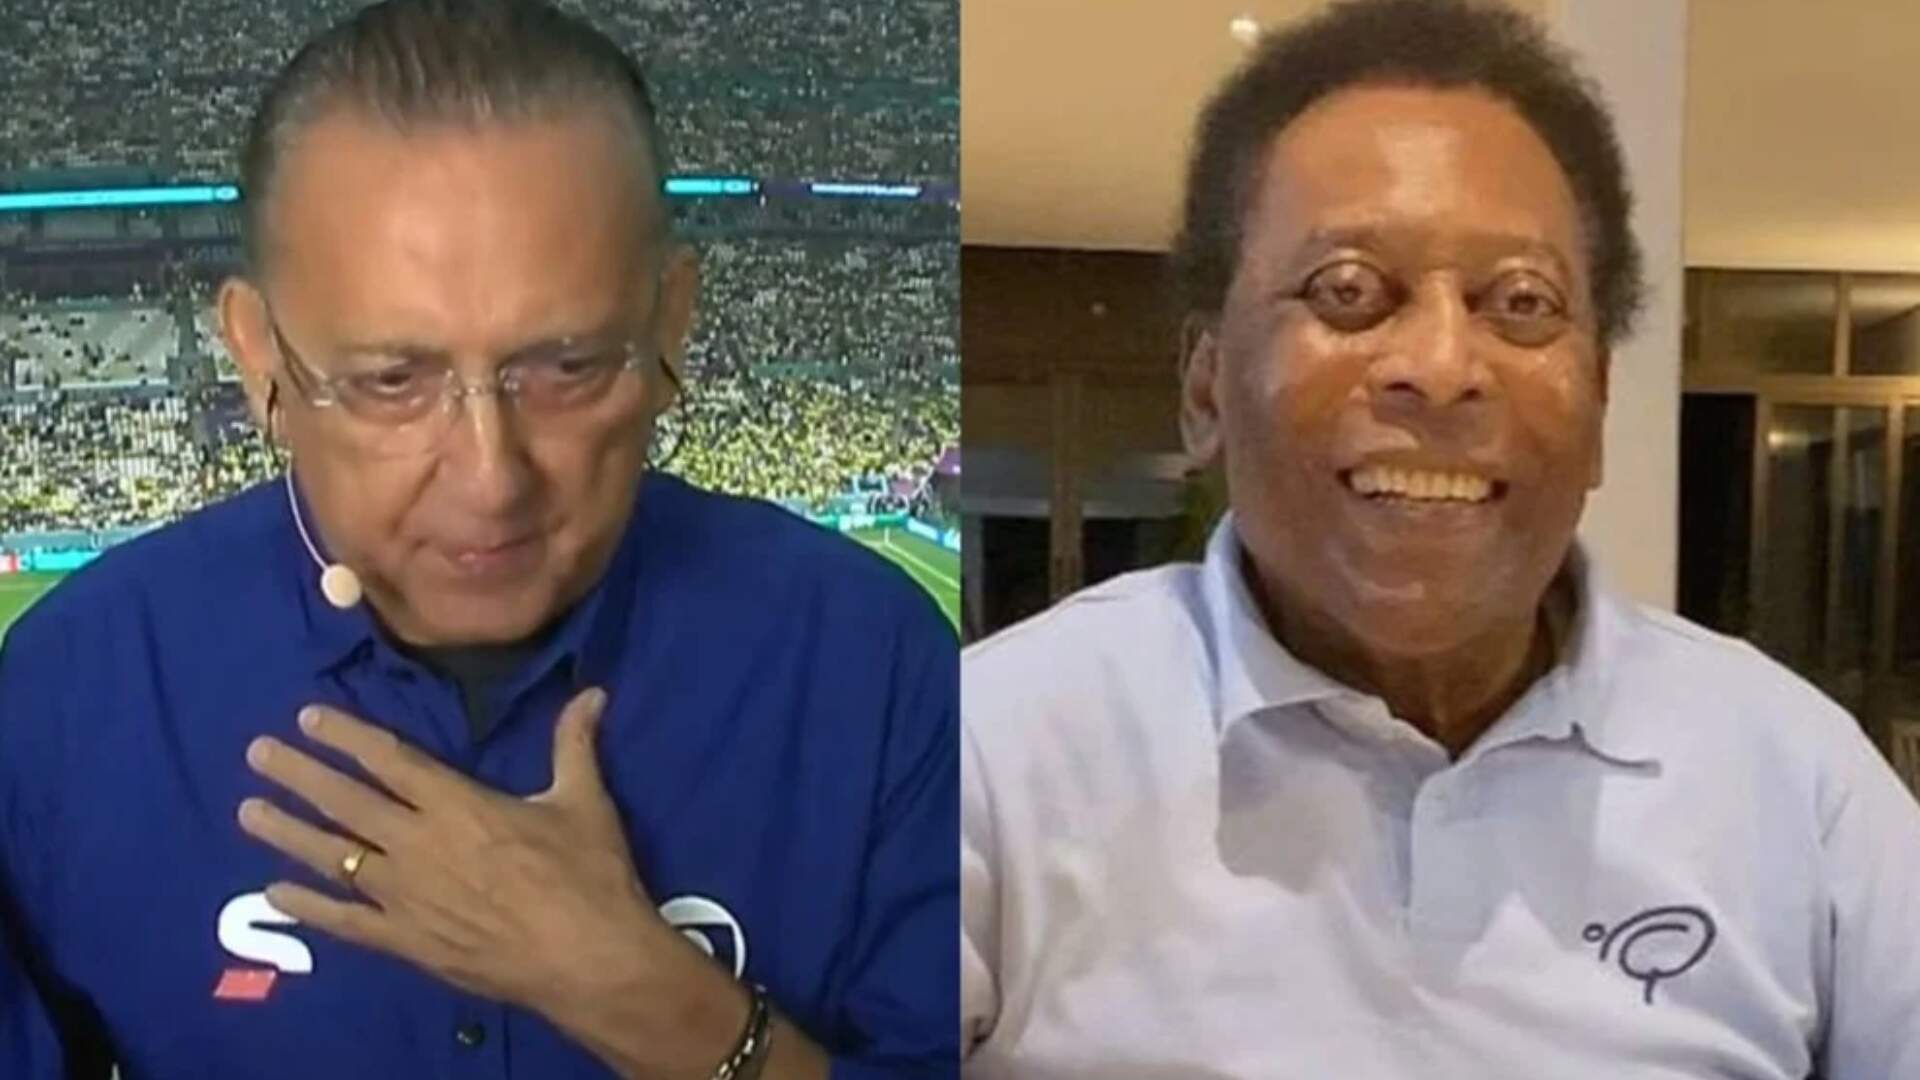 Galvão Bueno explica motivo de não comparecer ao velório de Pelé: “Tudo é questão de prioridade” - Metropolitana FM